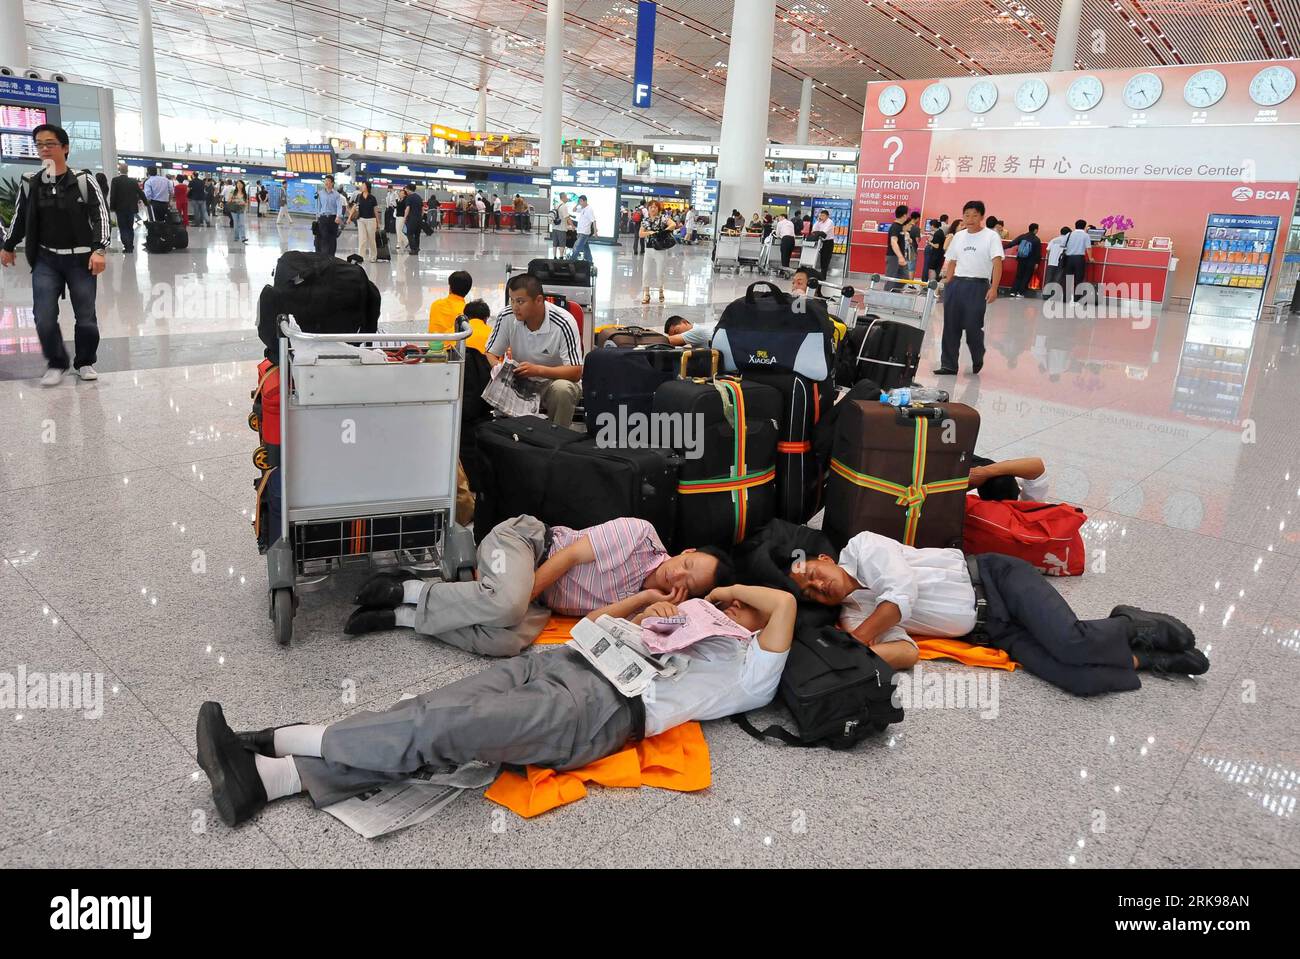 Bildnummer: 54150640 Datum: 17.06.2010 Copyright: imago/Xinhua (100617) -- PECHINO, 17 giugno 2010 (Xinhua) -- i passeggeri attendono al Terminal 3 dell'Aeroporto Internazionale di Pechino capitale a Pechino , Cina, 17 giugno 2010. Un totale di 201 voli sono stati cancellati e altri 414 sono stati ritardati a causa di una tempesta di tuoni di giovedì. (Xinhua/Luo Xiaoguang) (zcq) (1)CHINA-BEIJING-AIRPORT-STORM (CN) PUBLICATIONxNOTxINxCHN Gesellschaft Verkehr Flughafen Flugverkehr Sturm Wetter kbdig xdp premiumd xint 2010 quer o0 Flugausfall warten Passagier Flugpassagier schlafen 54150640 Data 17 06 2010 Copyright Imago XINHU Foto Stock